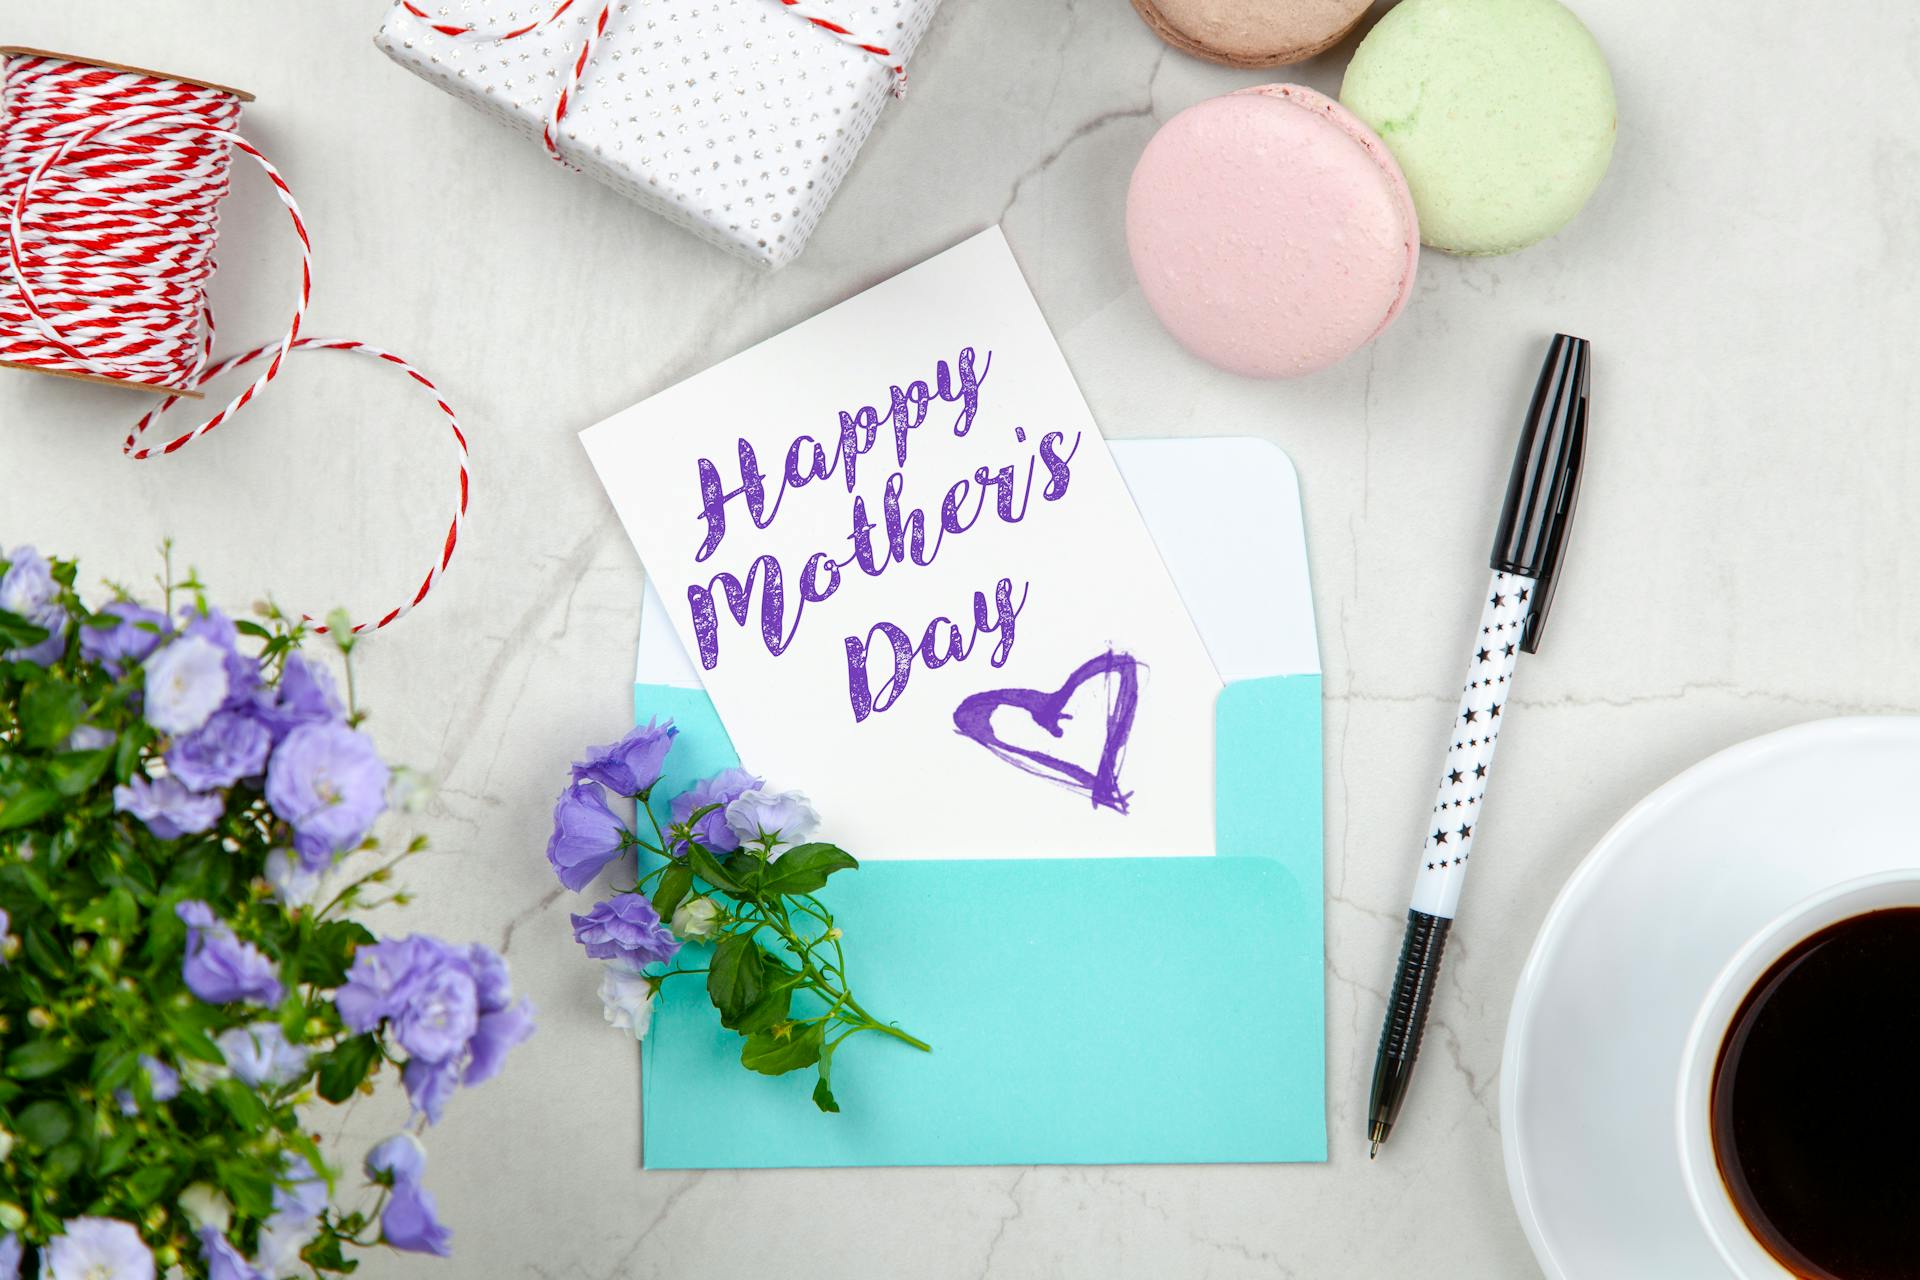 Una tarjeta del día de la madre junto a un bolígrafo, macarrones, flores y una caja cerca de una taza de café con platillo | Fuente: Pexels